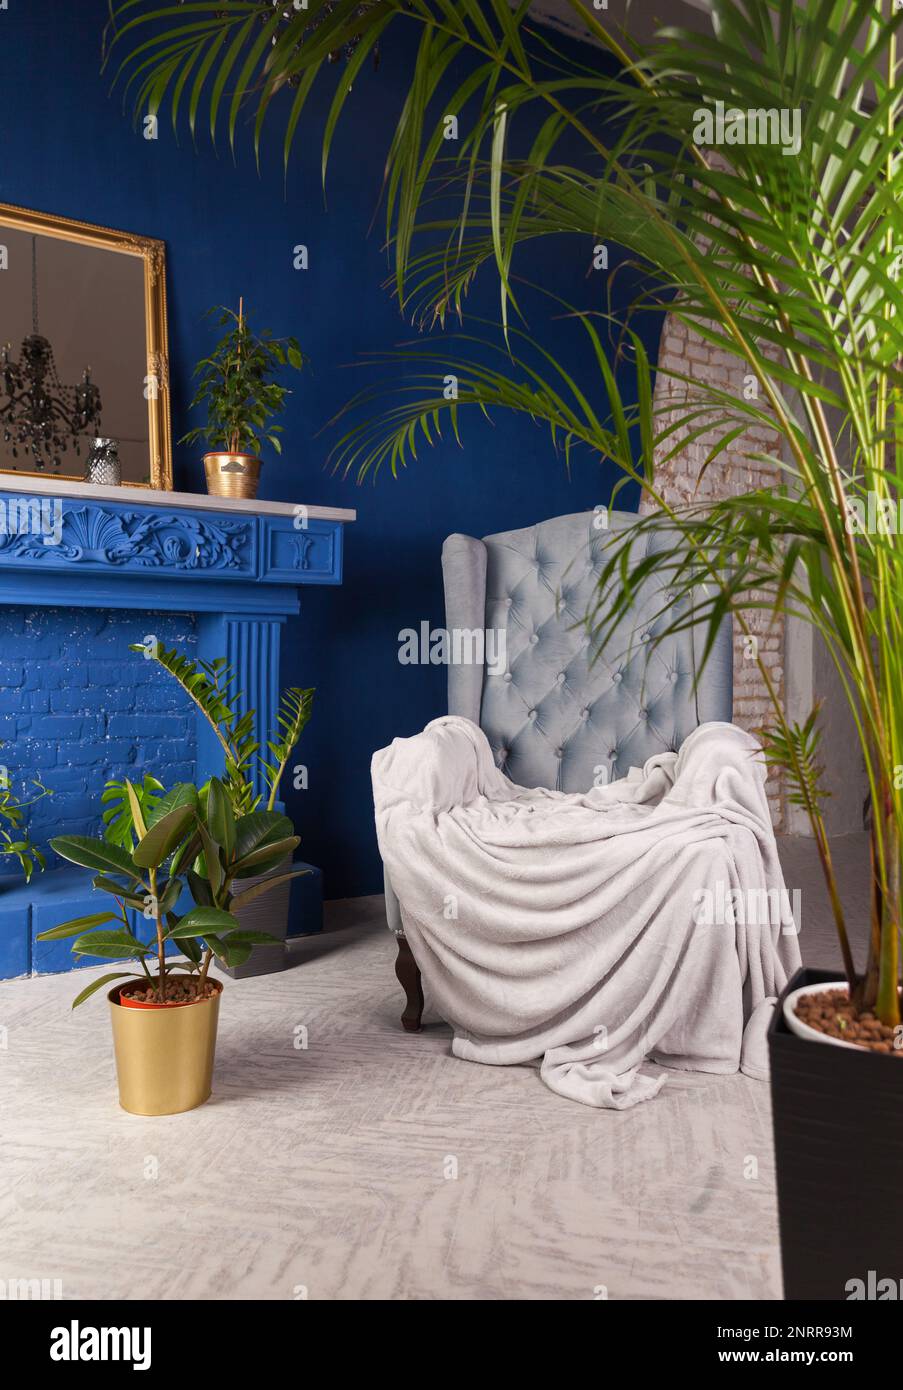 Manteau gris sur le fauteuil près du mur bleu et cheminée décorative dans la maison ou l'hôtel de charme. Plantes vertes dans le salon intérieur dans l'appartement art déco. Banque D'Images